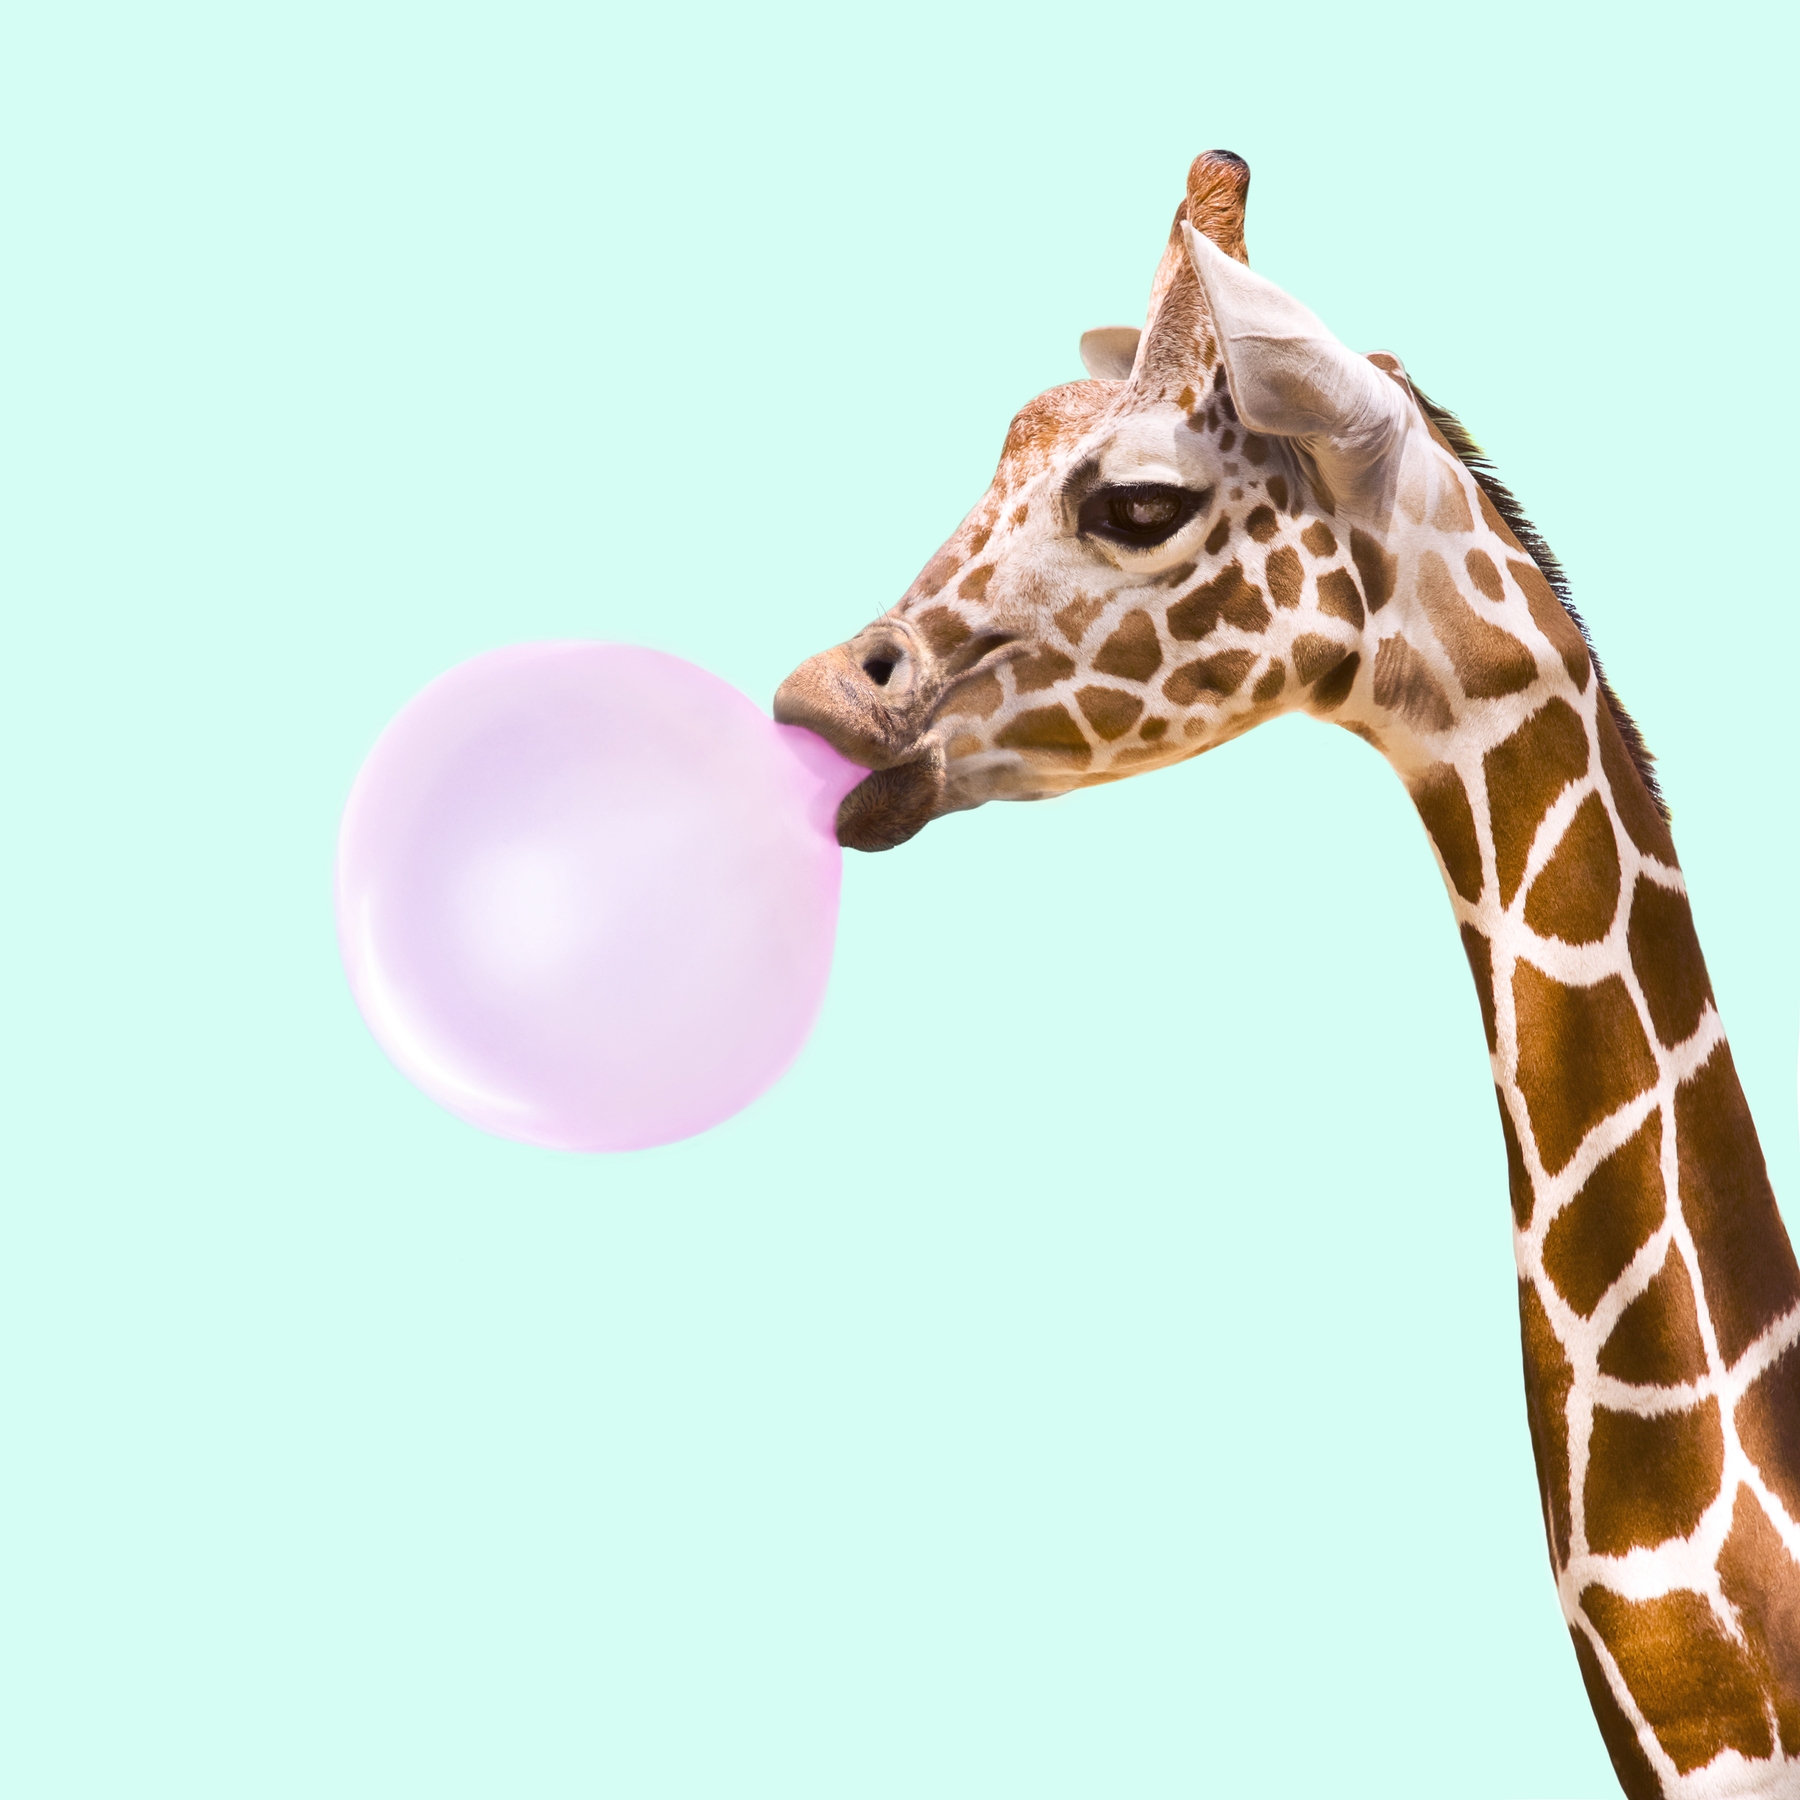 bubblegum_giraffe_display.jpg